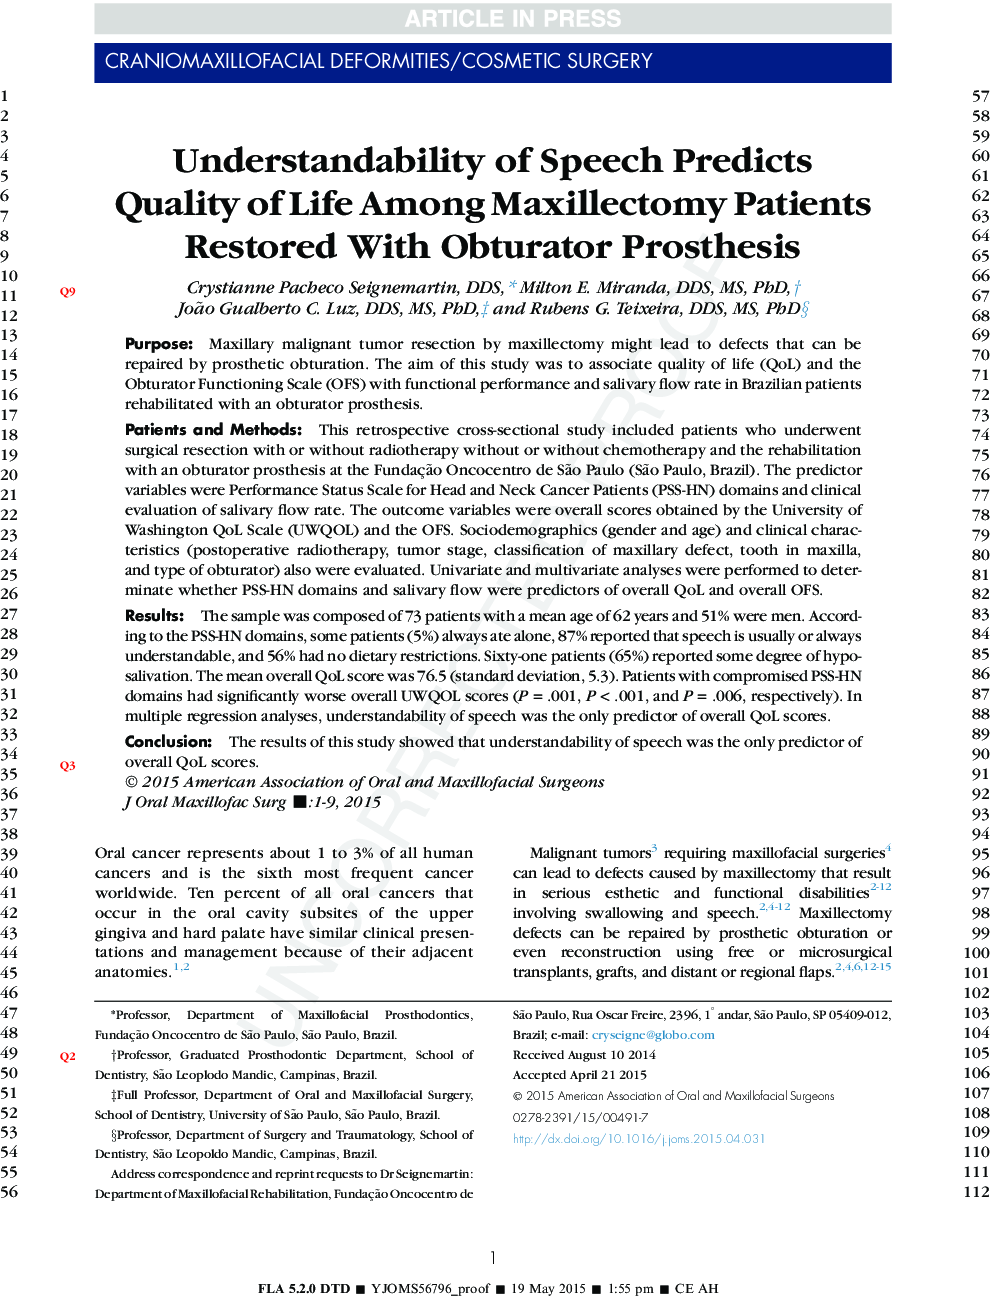 تعاریف گفتار پیش بینی کیفیت زندگی در میان بیماران ماکسیلکتومی با استفاده از پروتز ابیاتور 